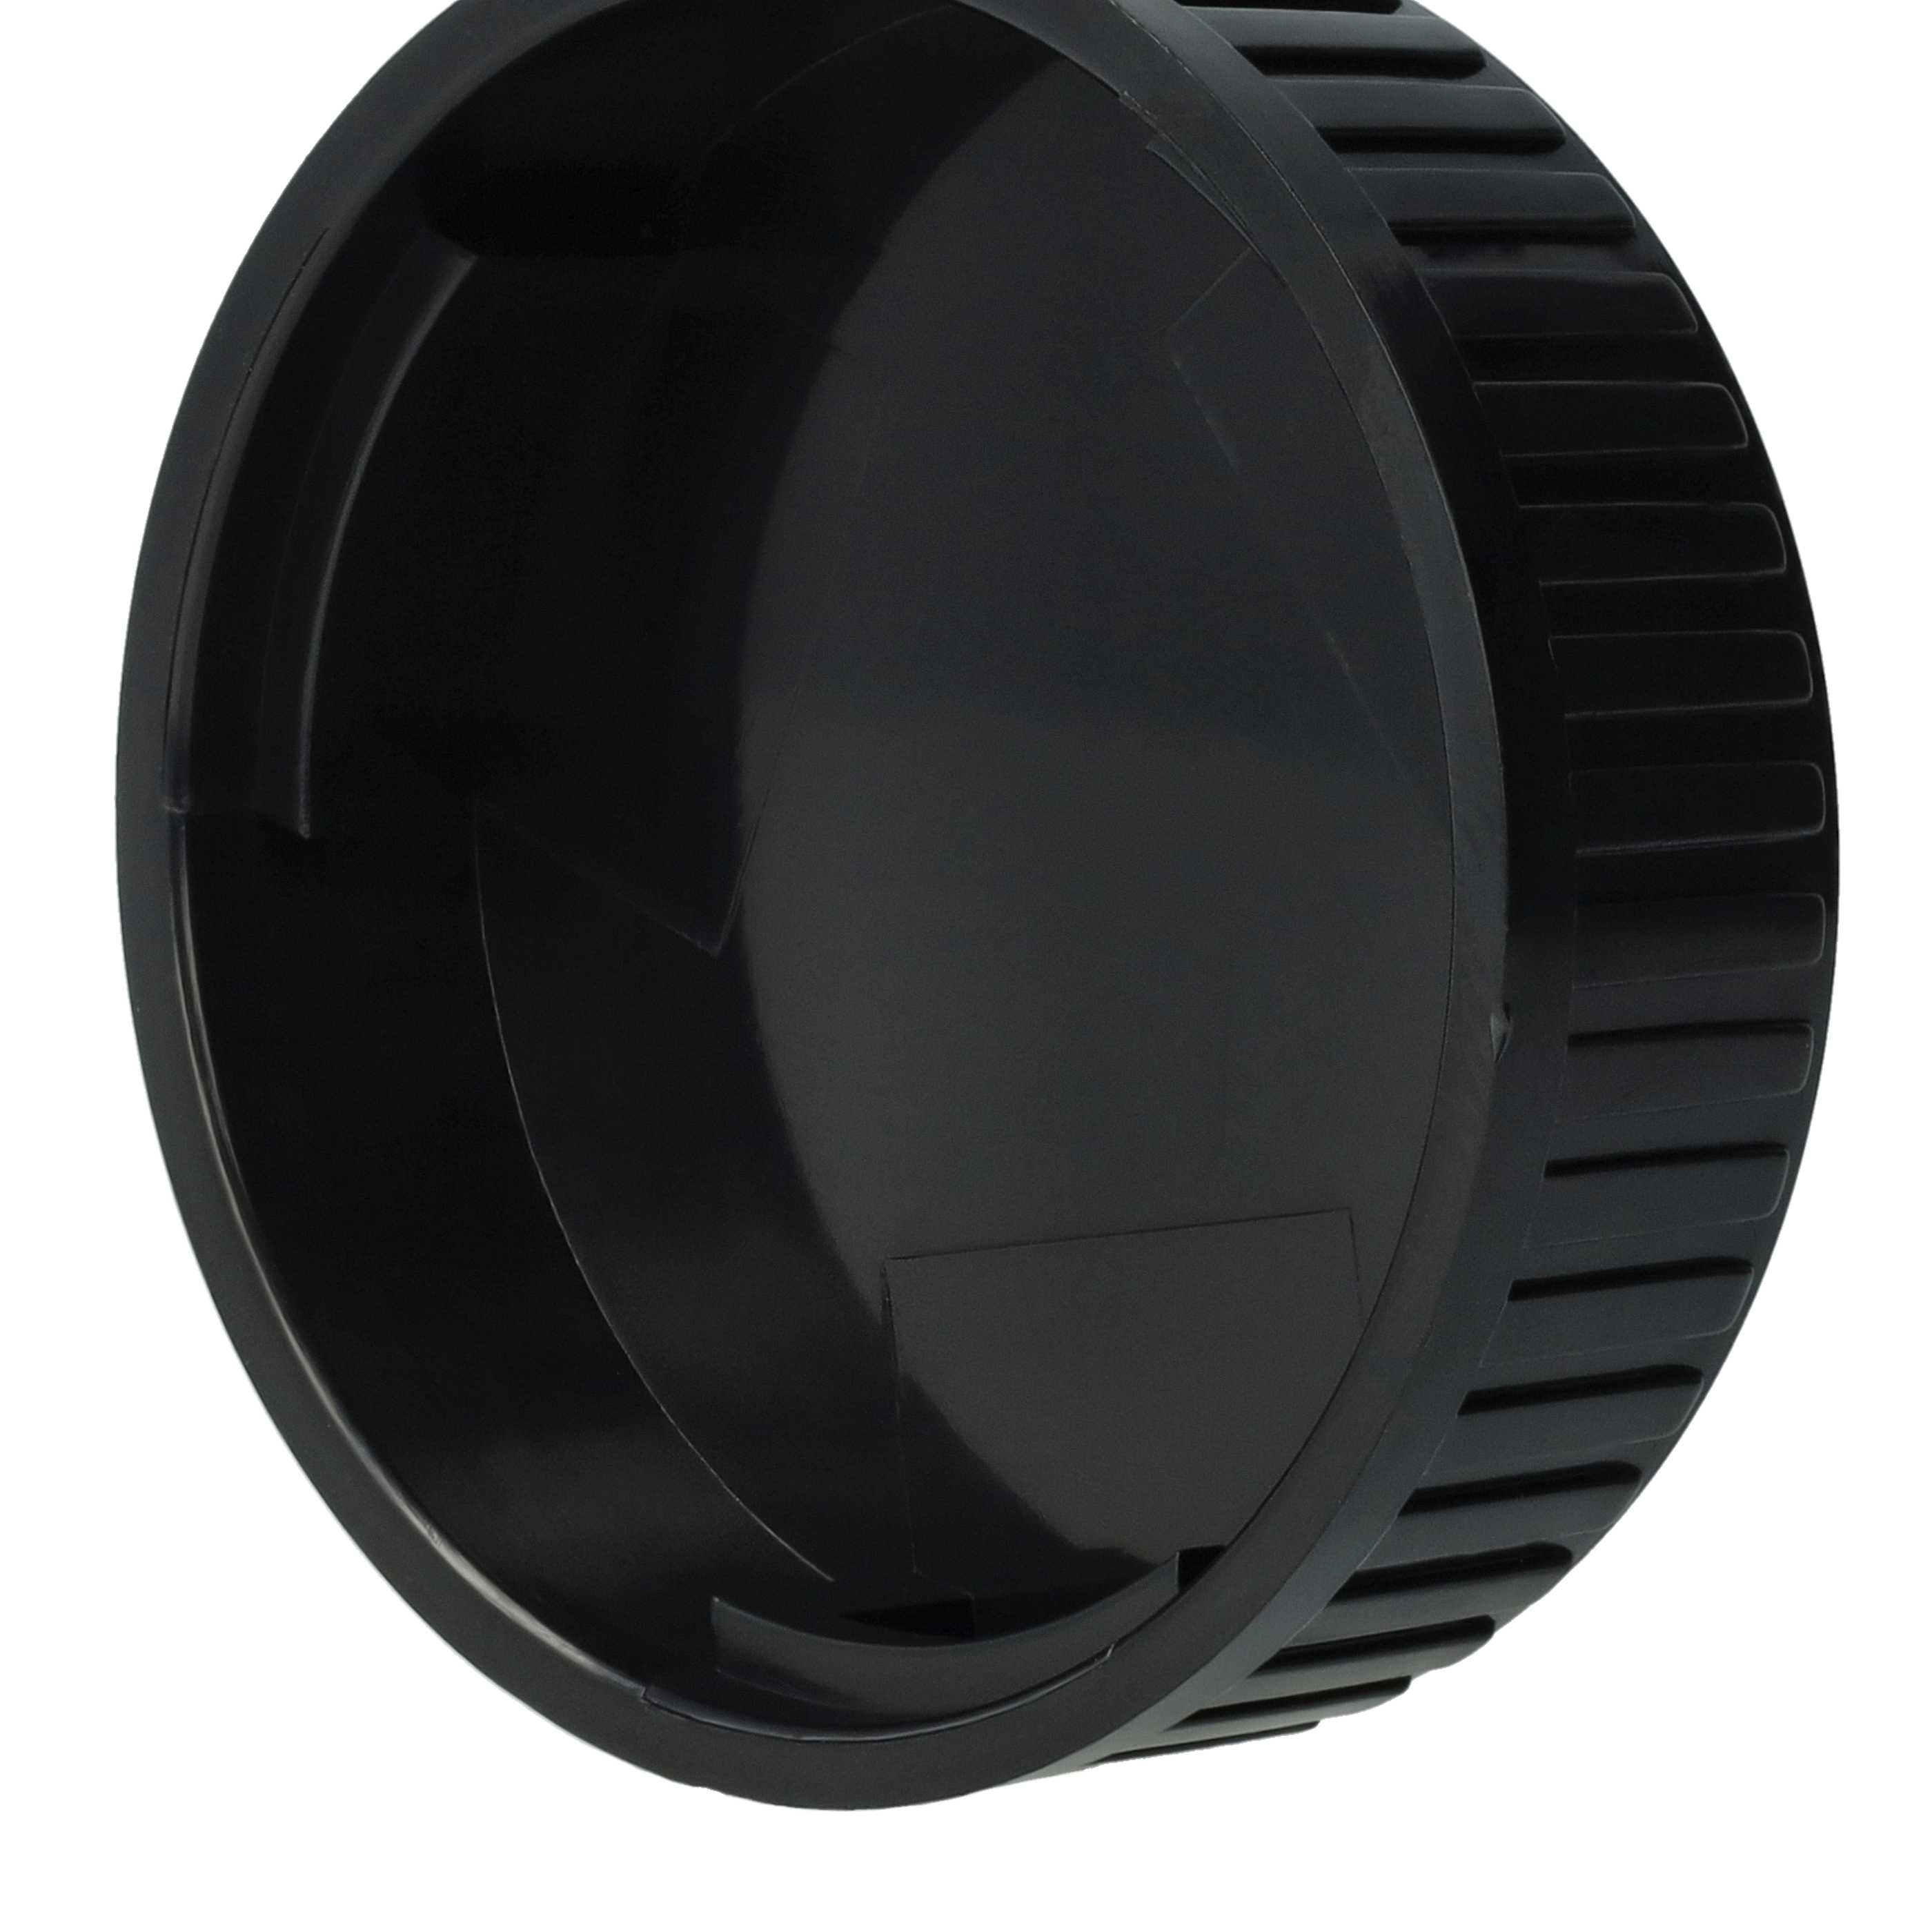  Objektiv-Rückdeckel für A290 Sony mit MD - Bajonett - Schwarz